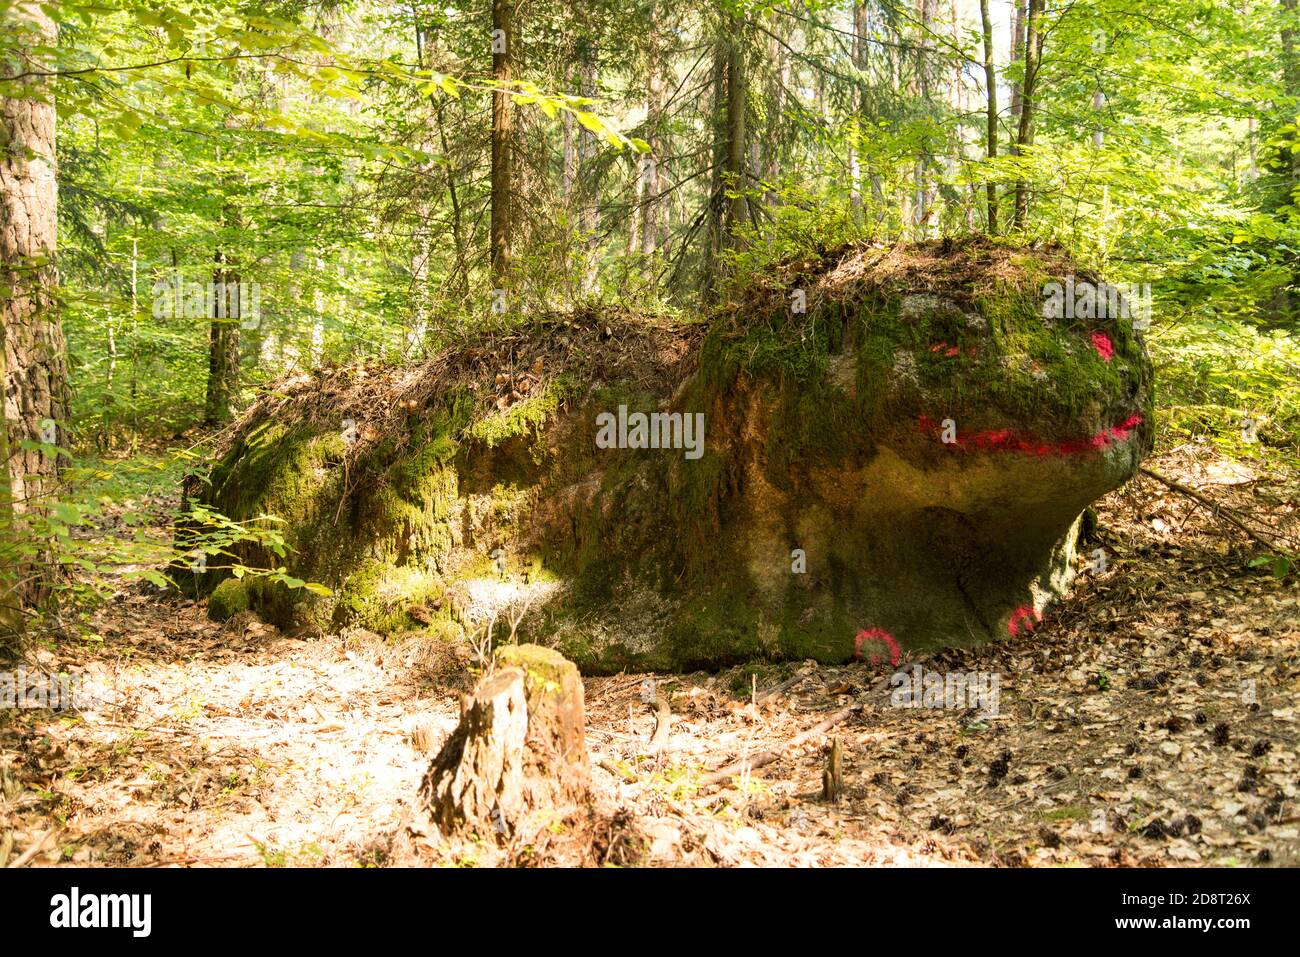 Ein lächelndes Waldmonster an einem Wanderweg im Bayerischen Wald - a smiling monster in the woods near a hiking trail in the Bavarian forest region. Stock Photo